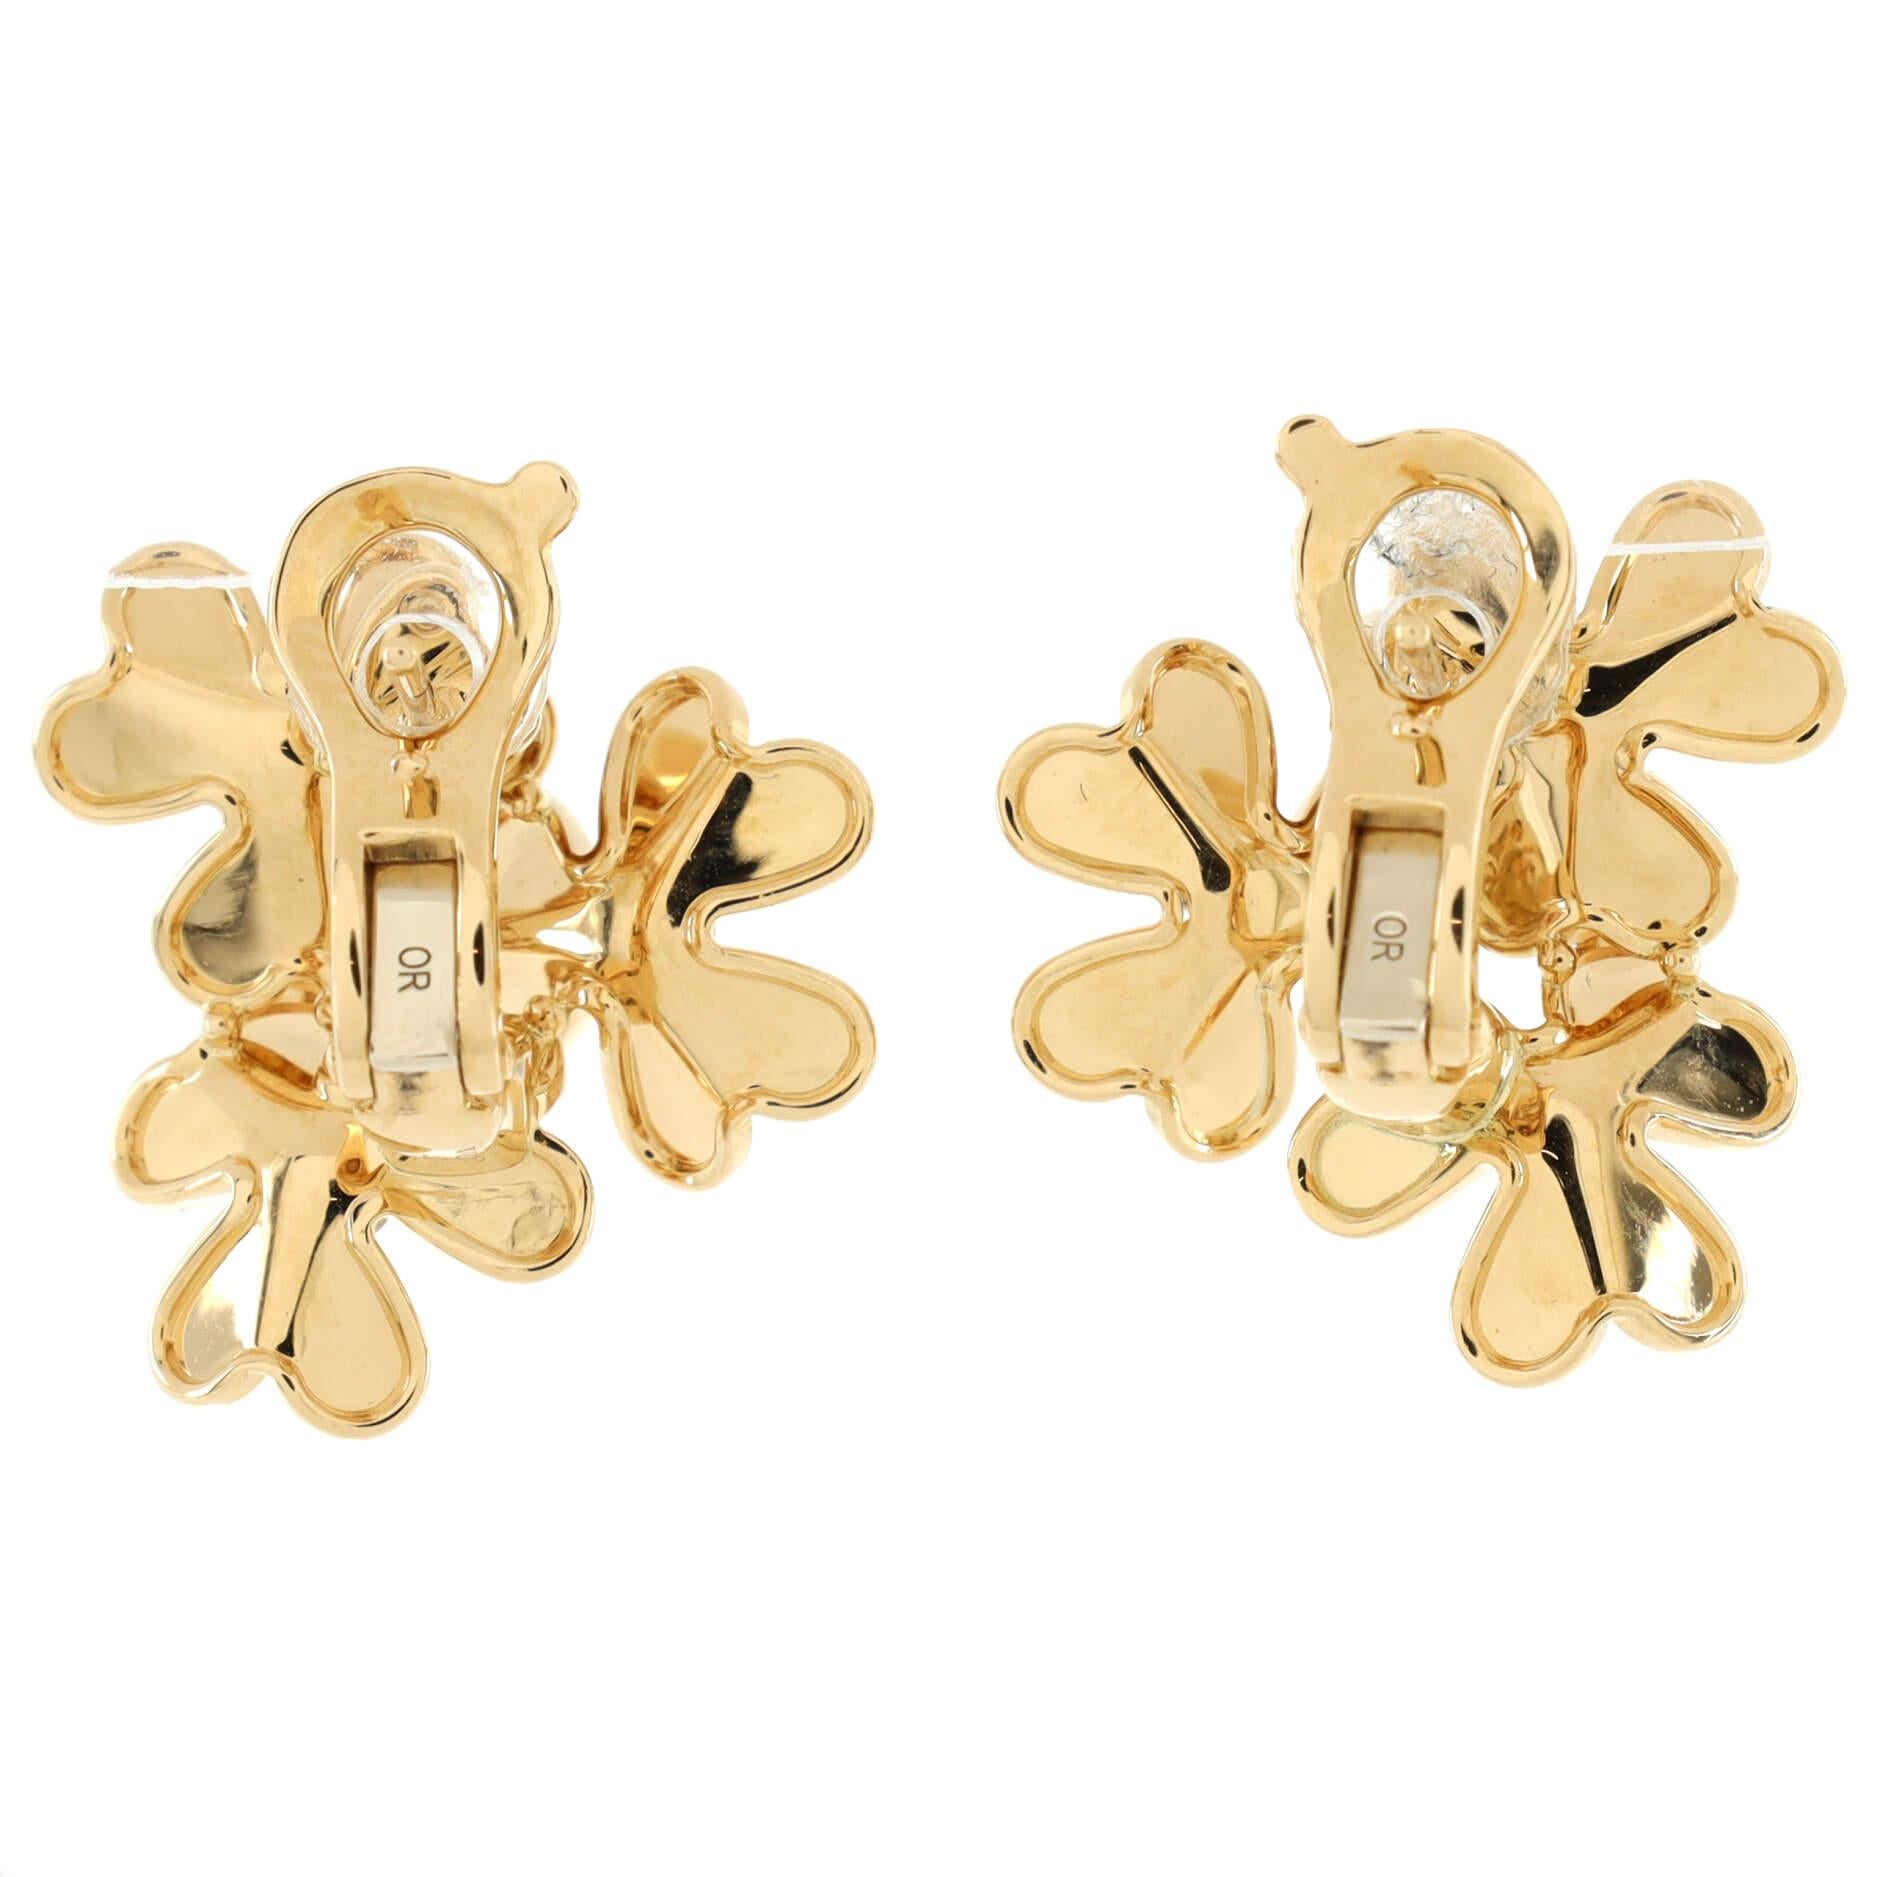 Women's Van Cleef & Arpels Frivole 3 Motif Stud Earrings 18k Yellow Gold with Diamonds 